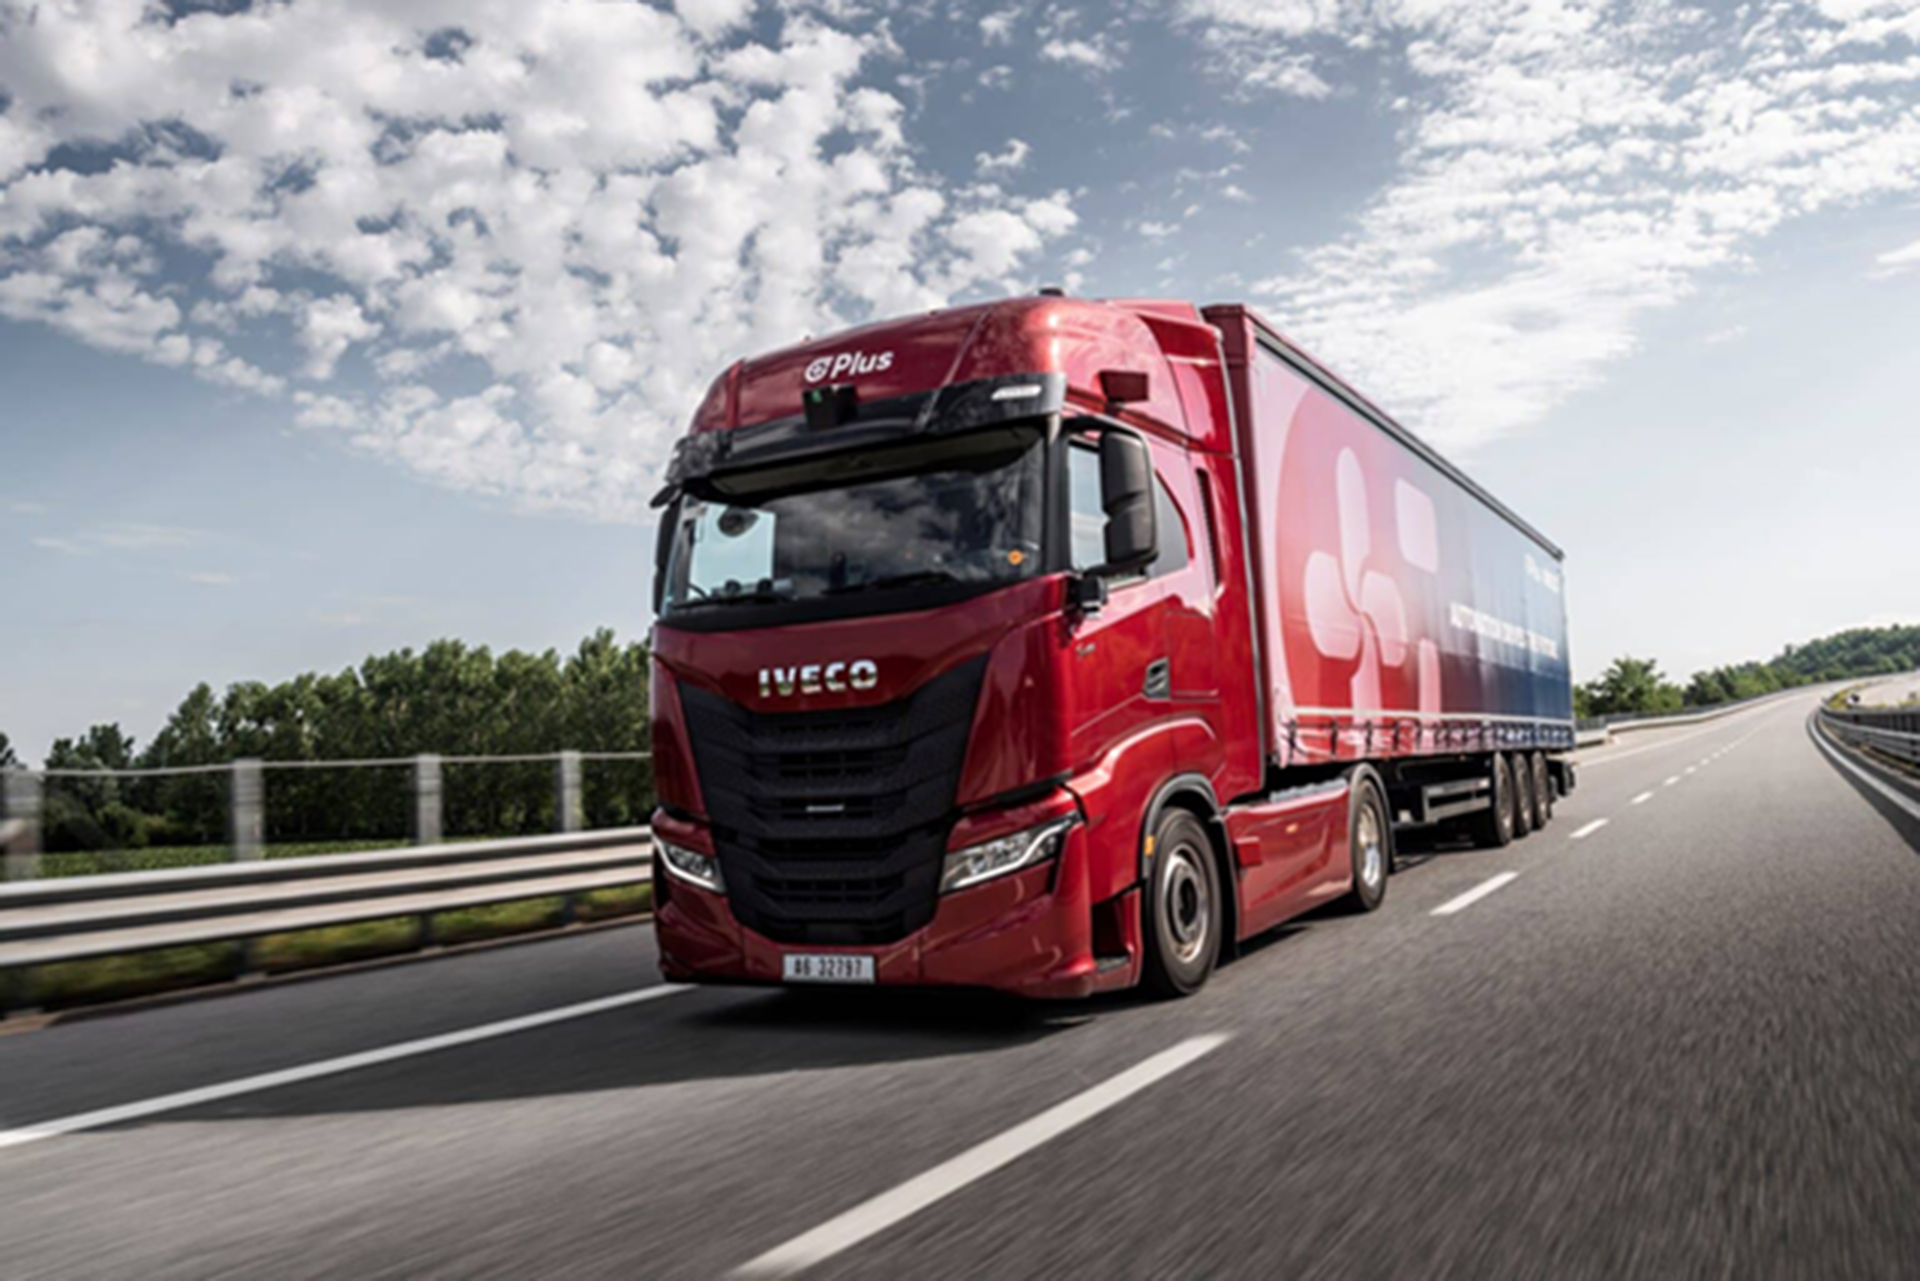 IVECO et Plus commencent les essais sur route publique de leur camion hautement automatisé en Allemagne